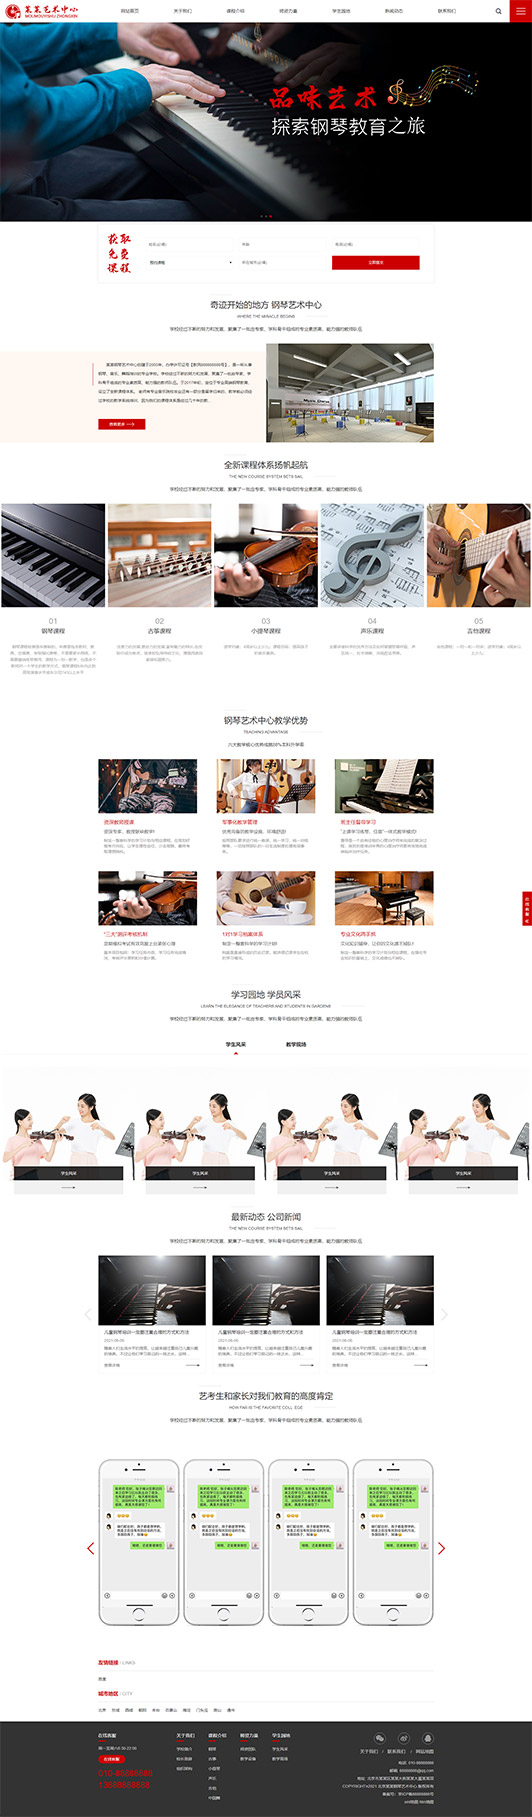 安徽钢琴艺术培训公司响应式企业网站